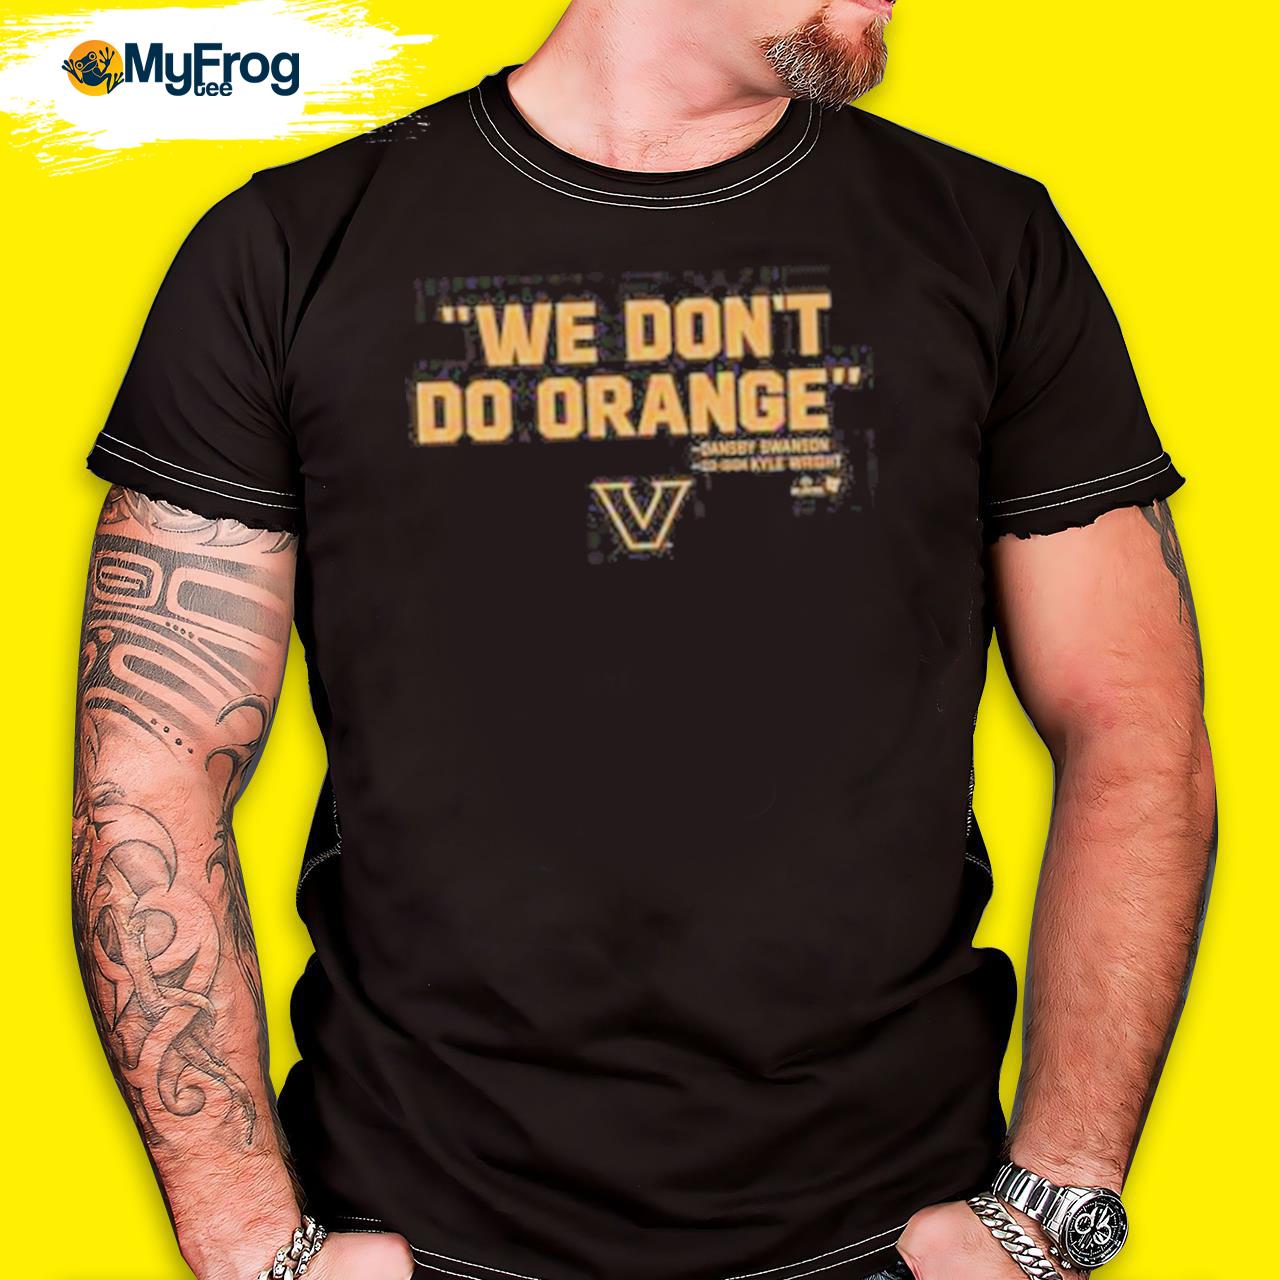 We don't do orange shirt